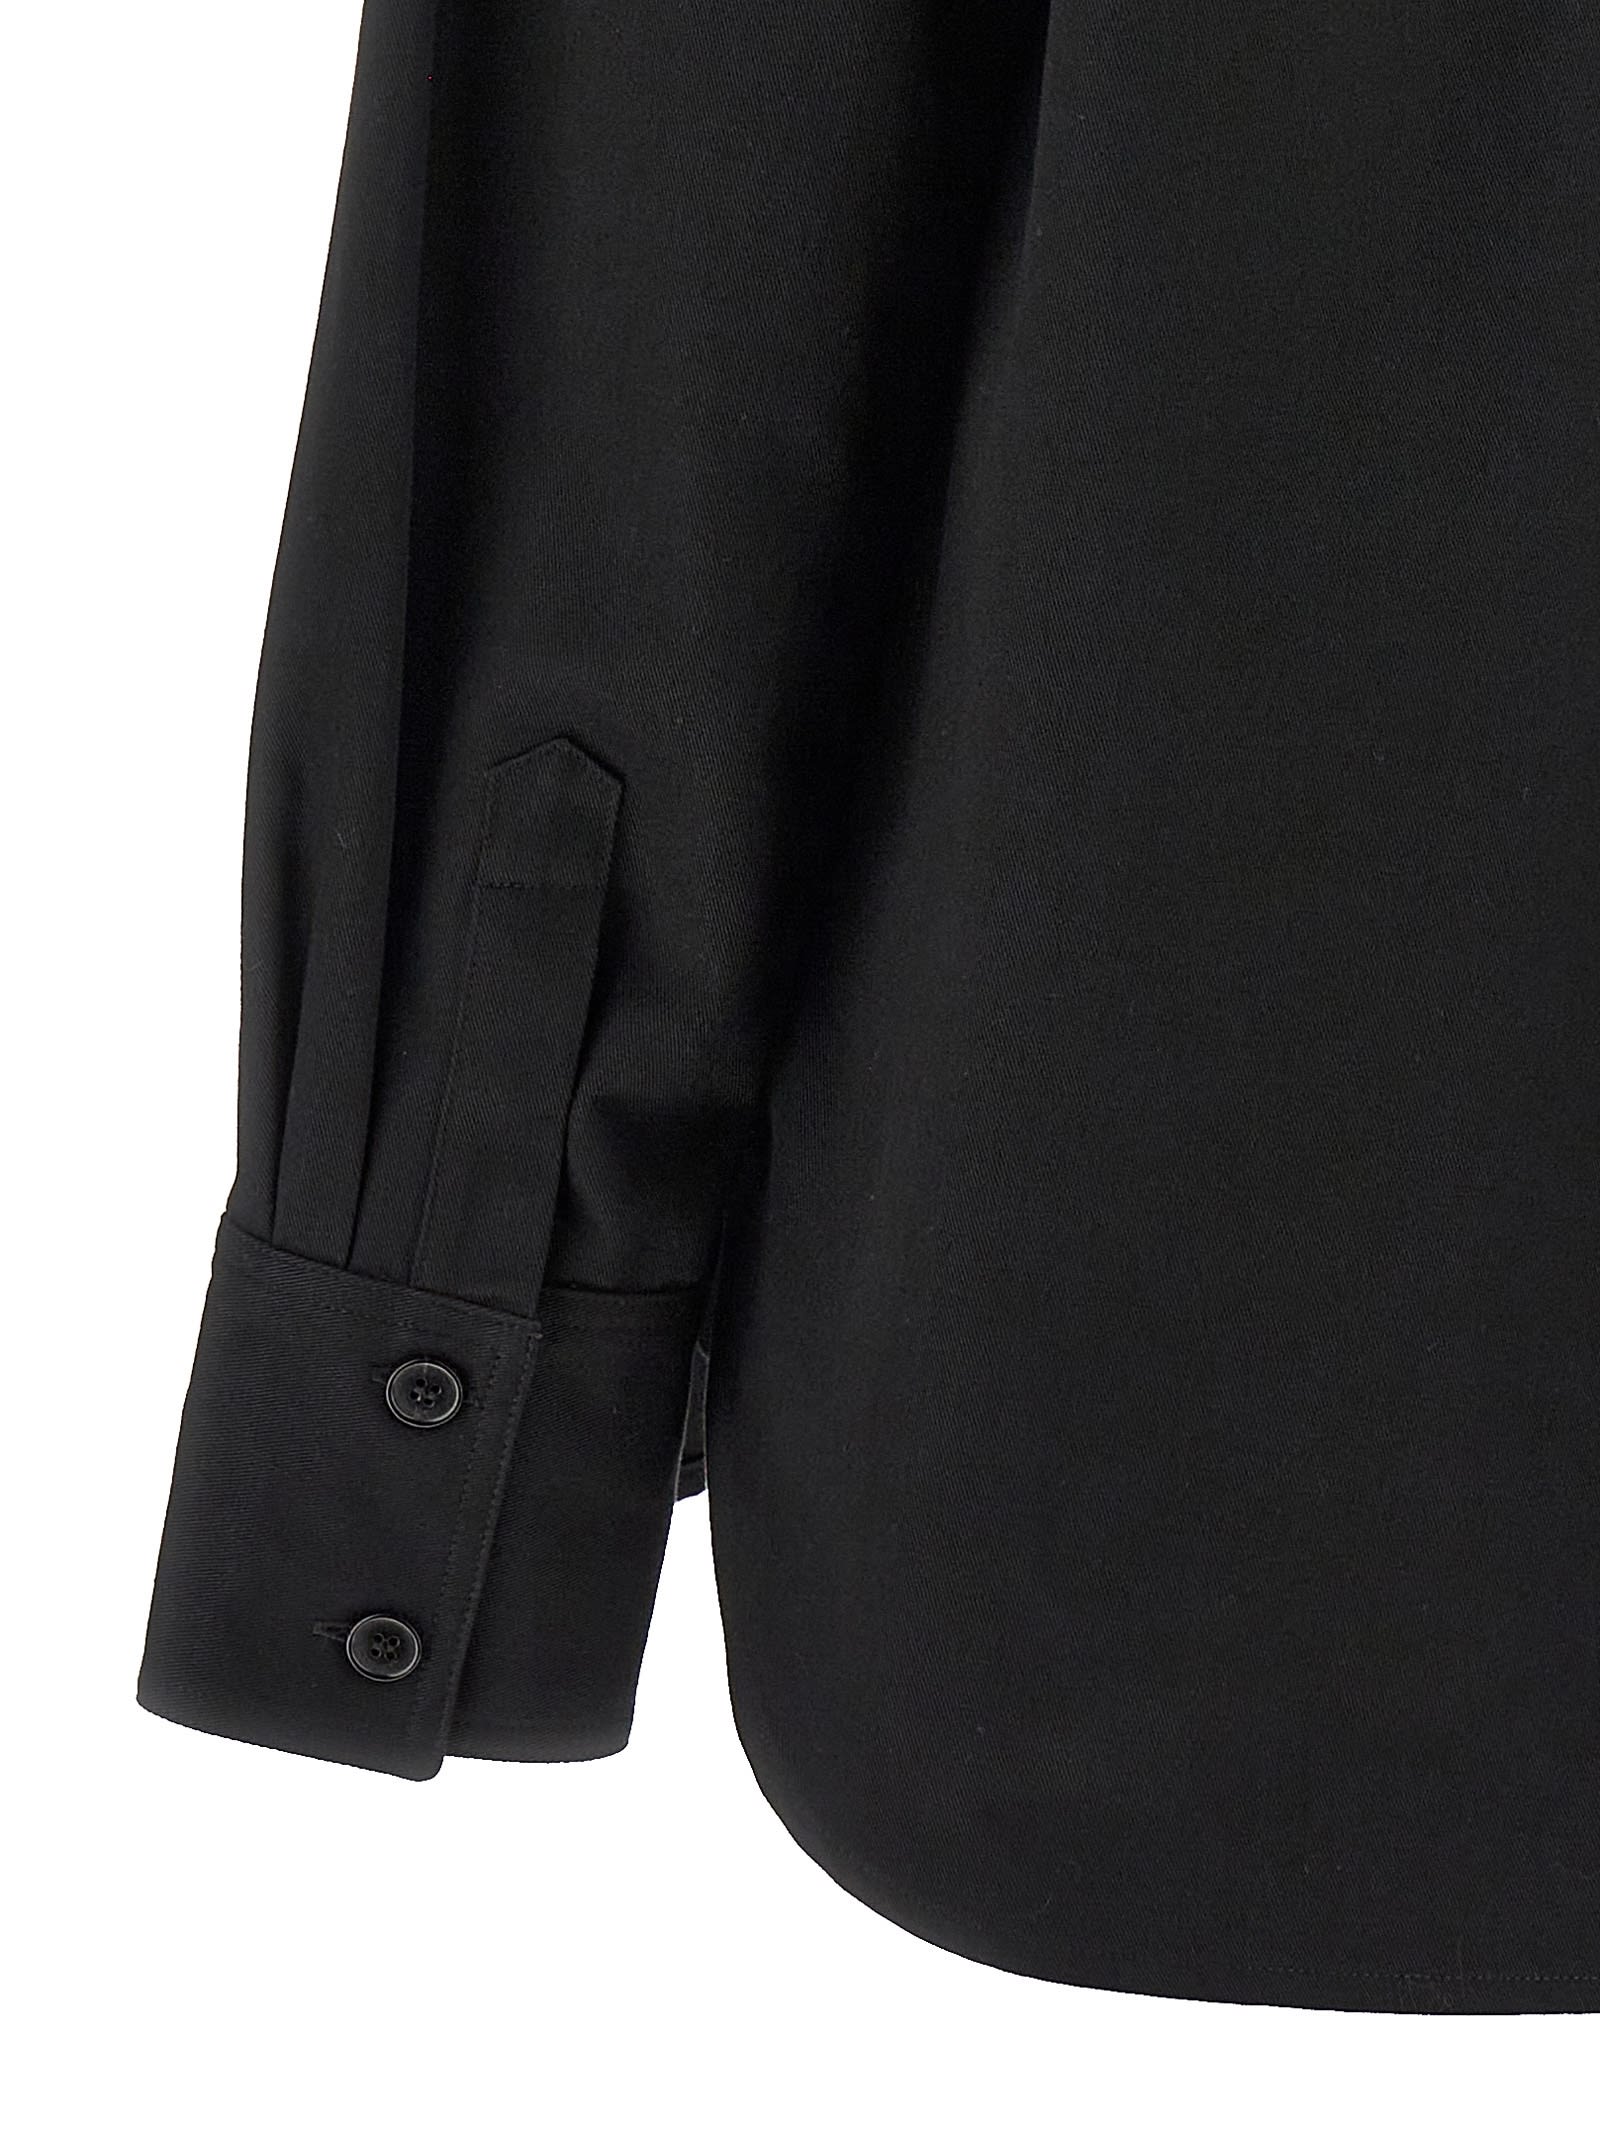 Shop Saint Laurent Saharienne Shirt In Black